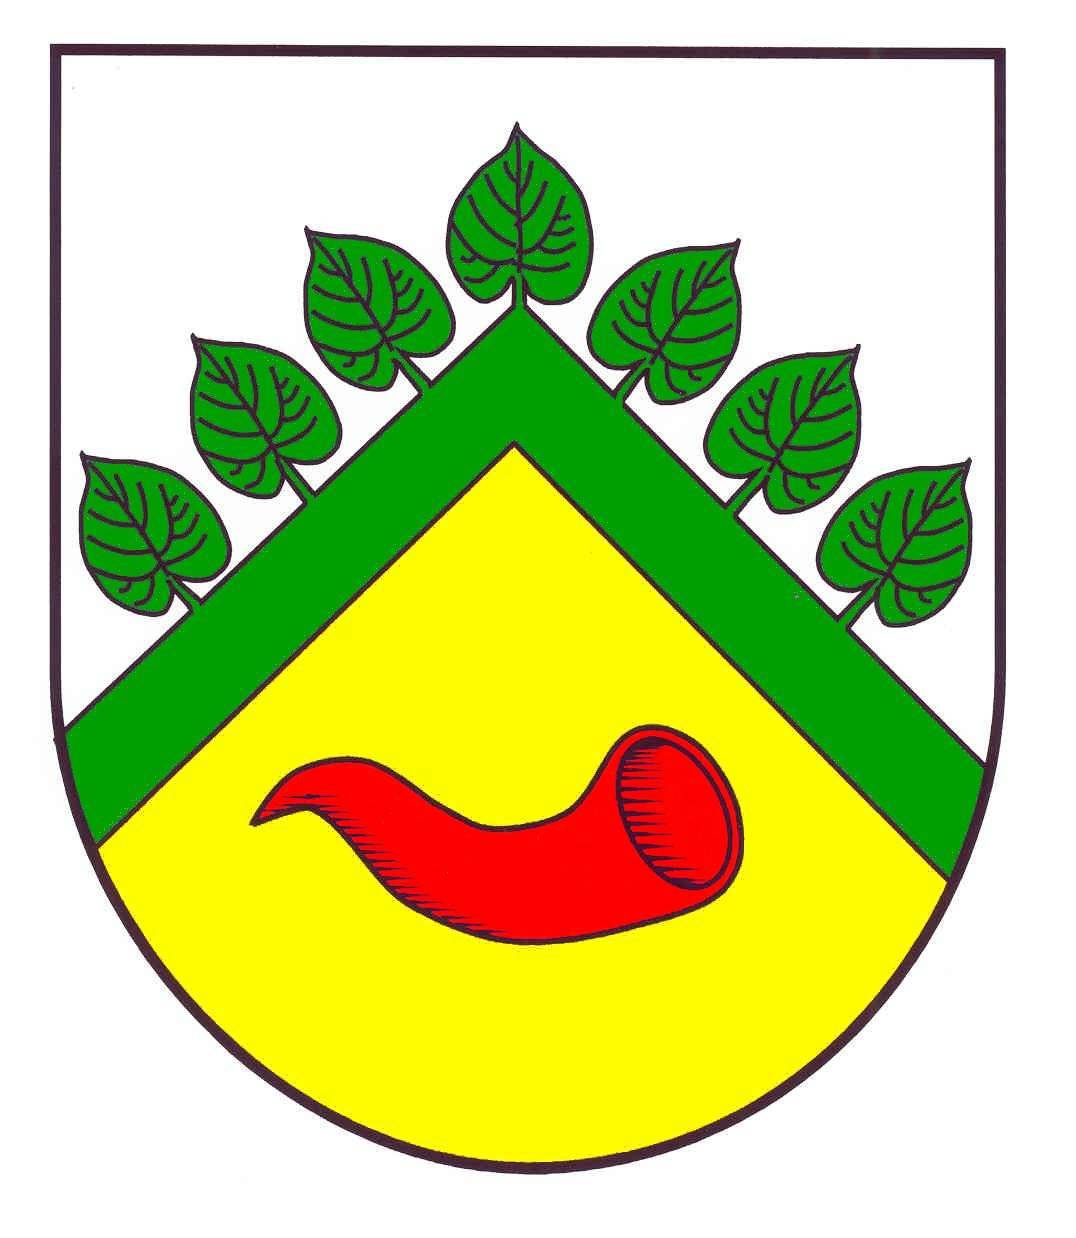 Wappen Gemeinde Ruhwinkel, Kreis Plön